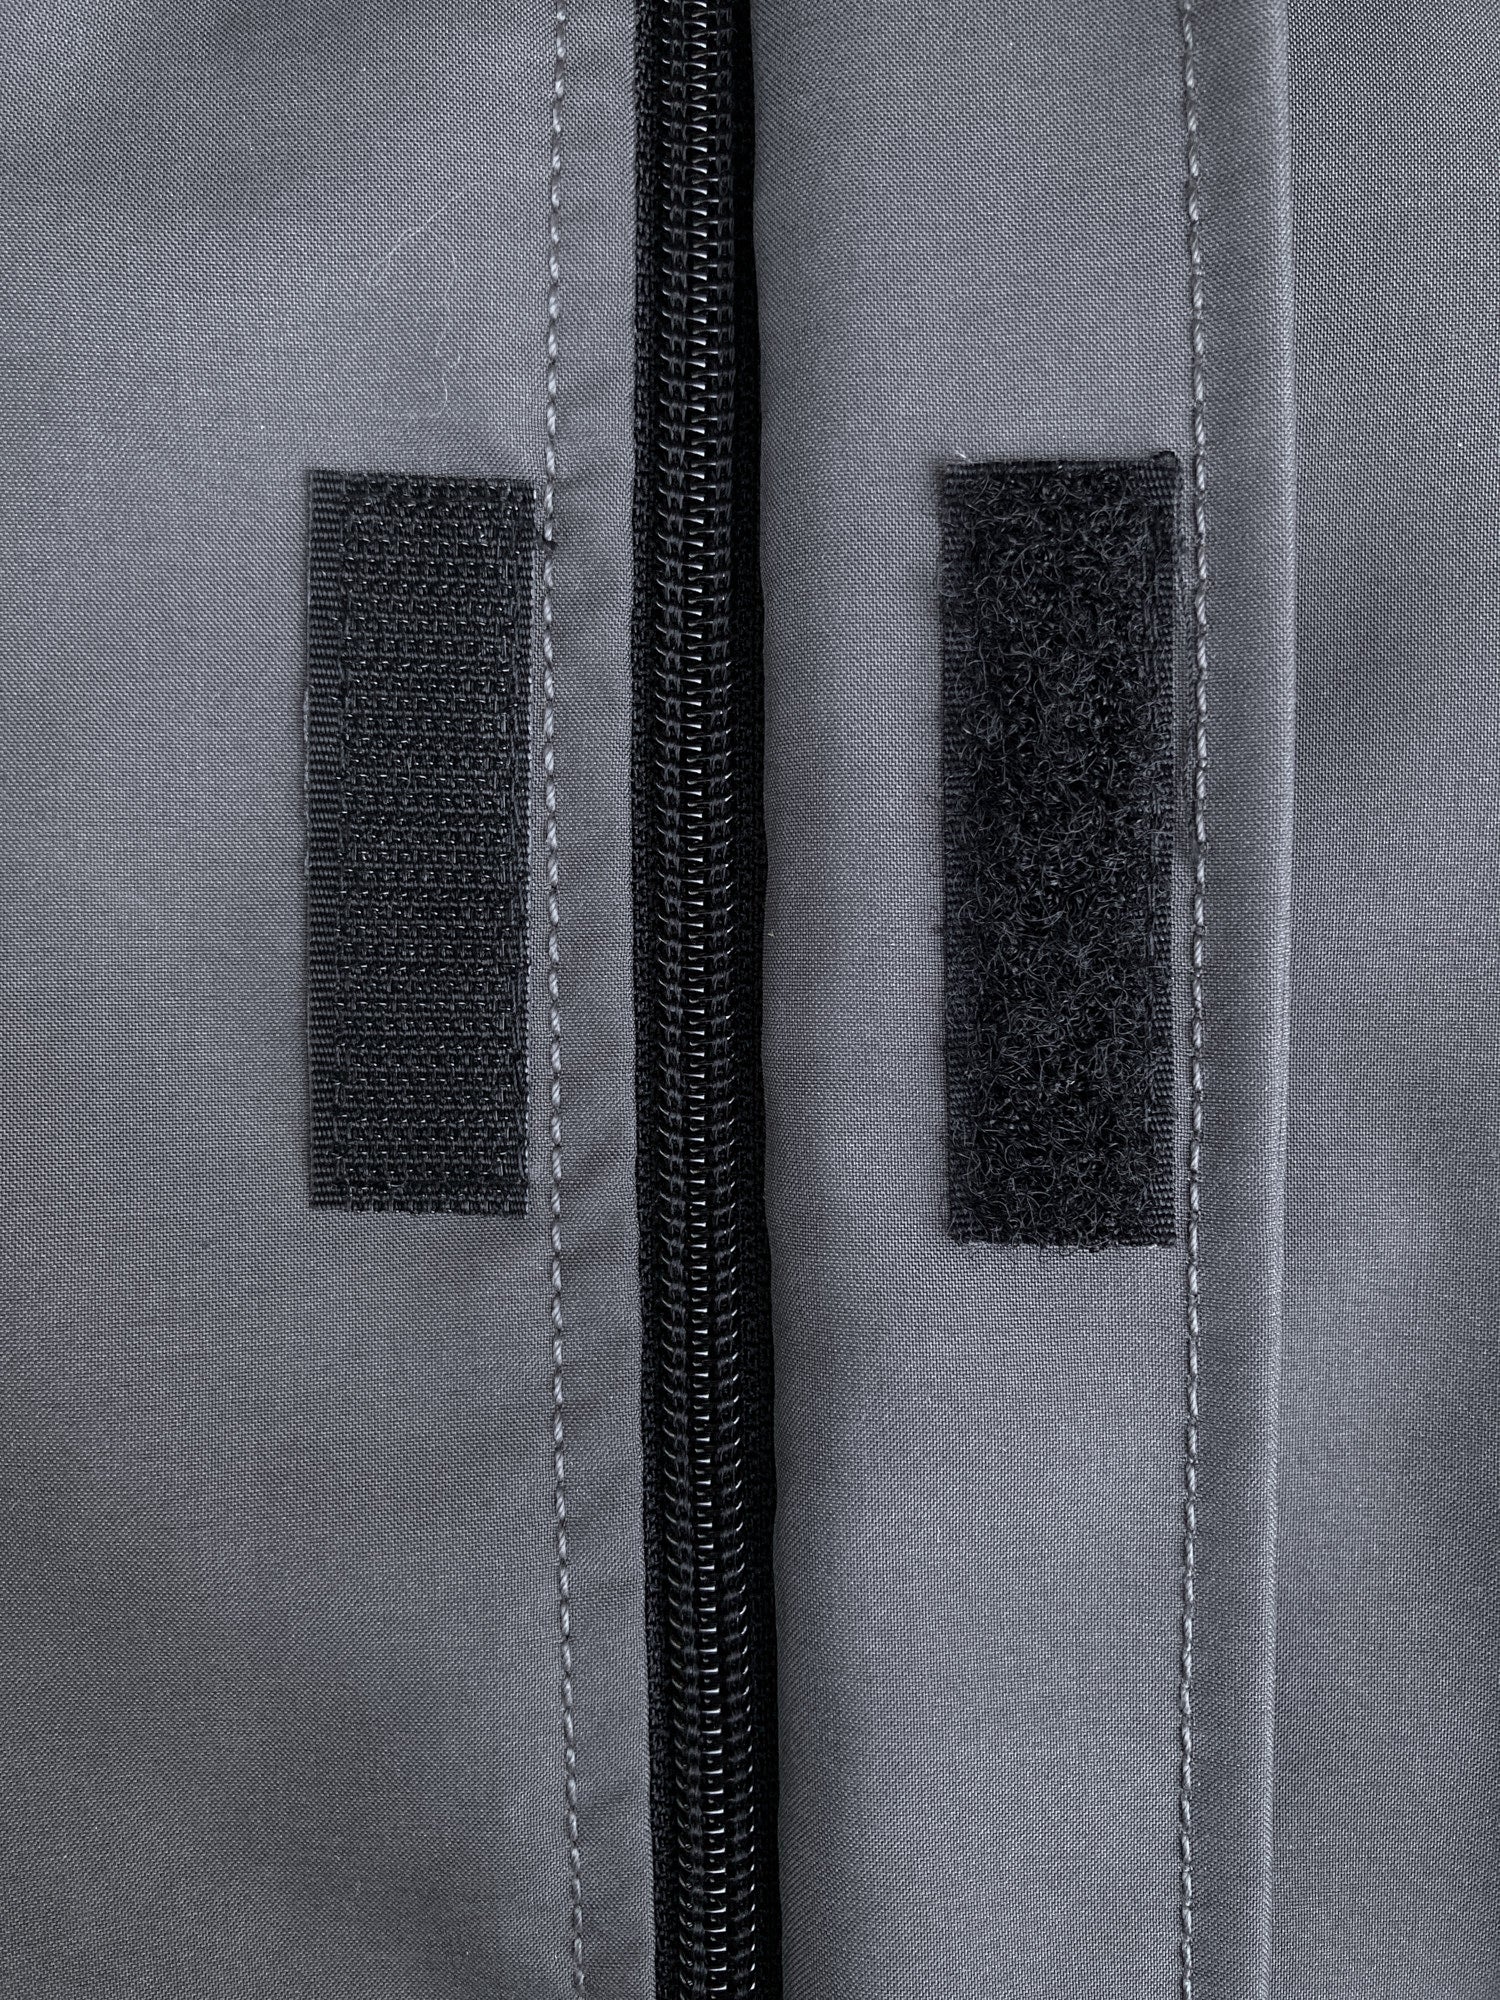 Samsonite 1990s grey polyester blend removable liner zip coat - size 50